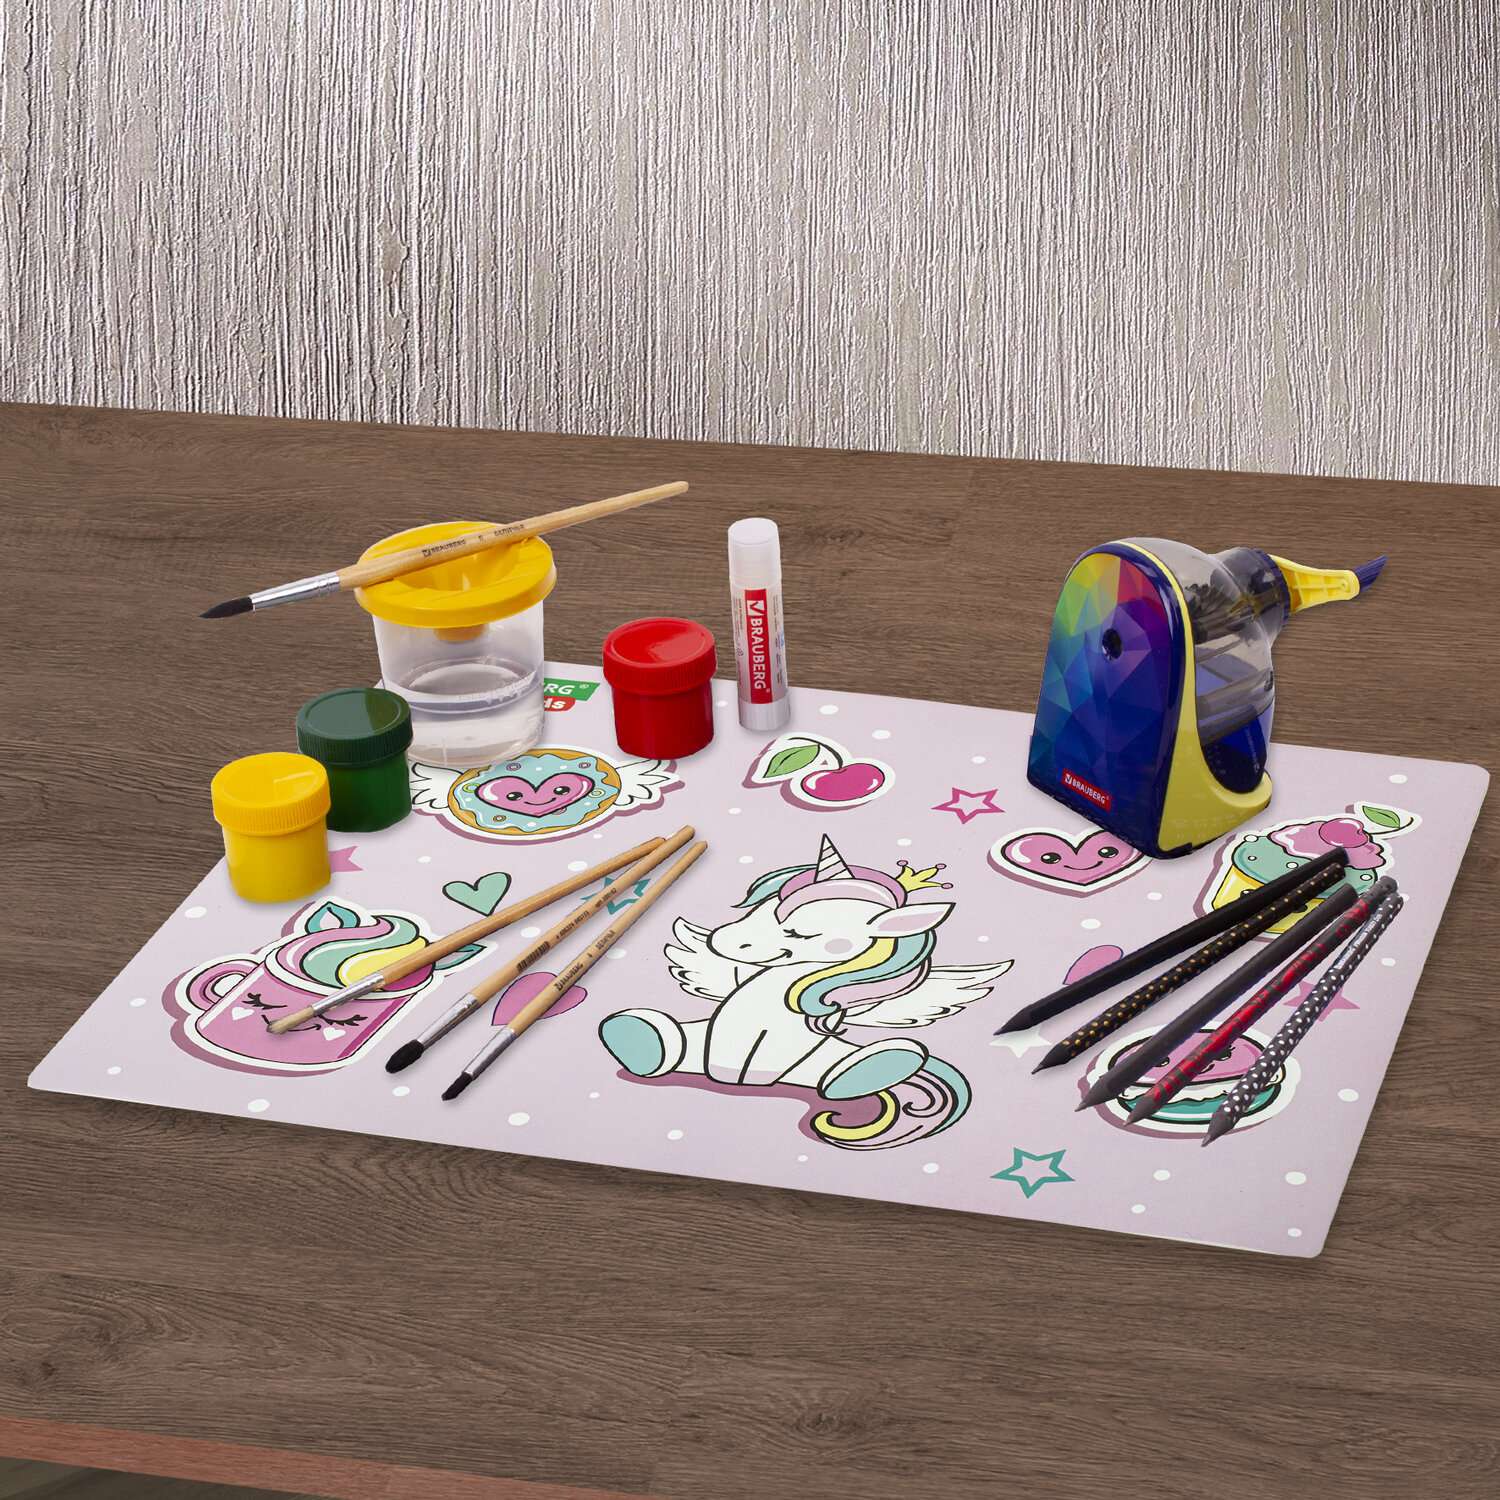 Клеенка настольная Brauberg подложка на стол детская для труда и рисования А3+ 46x33 см - фото 9